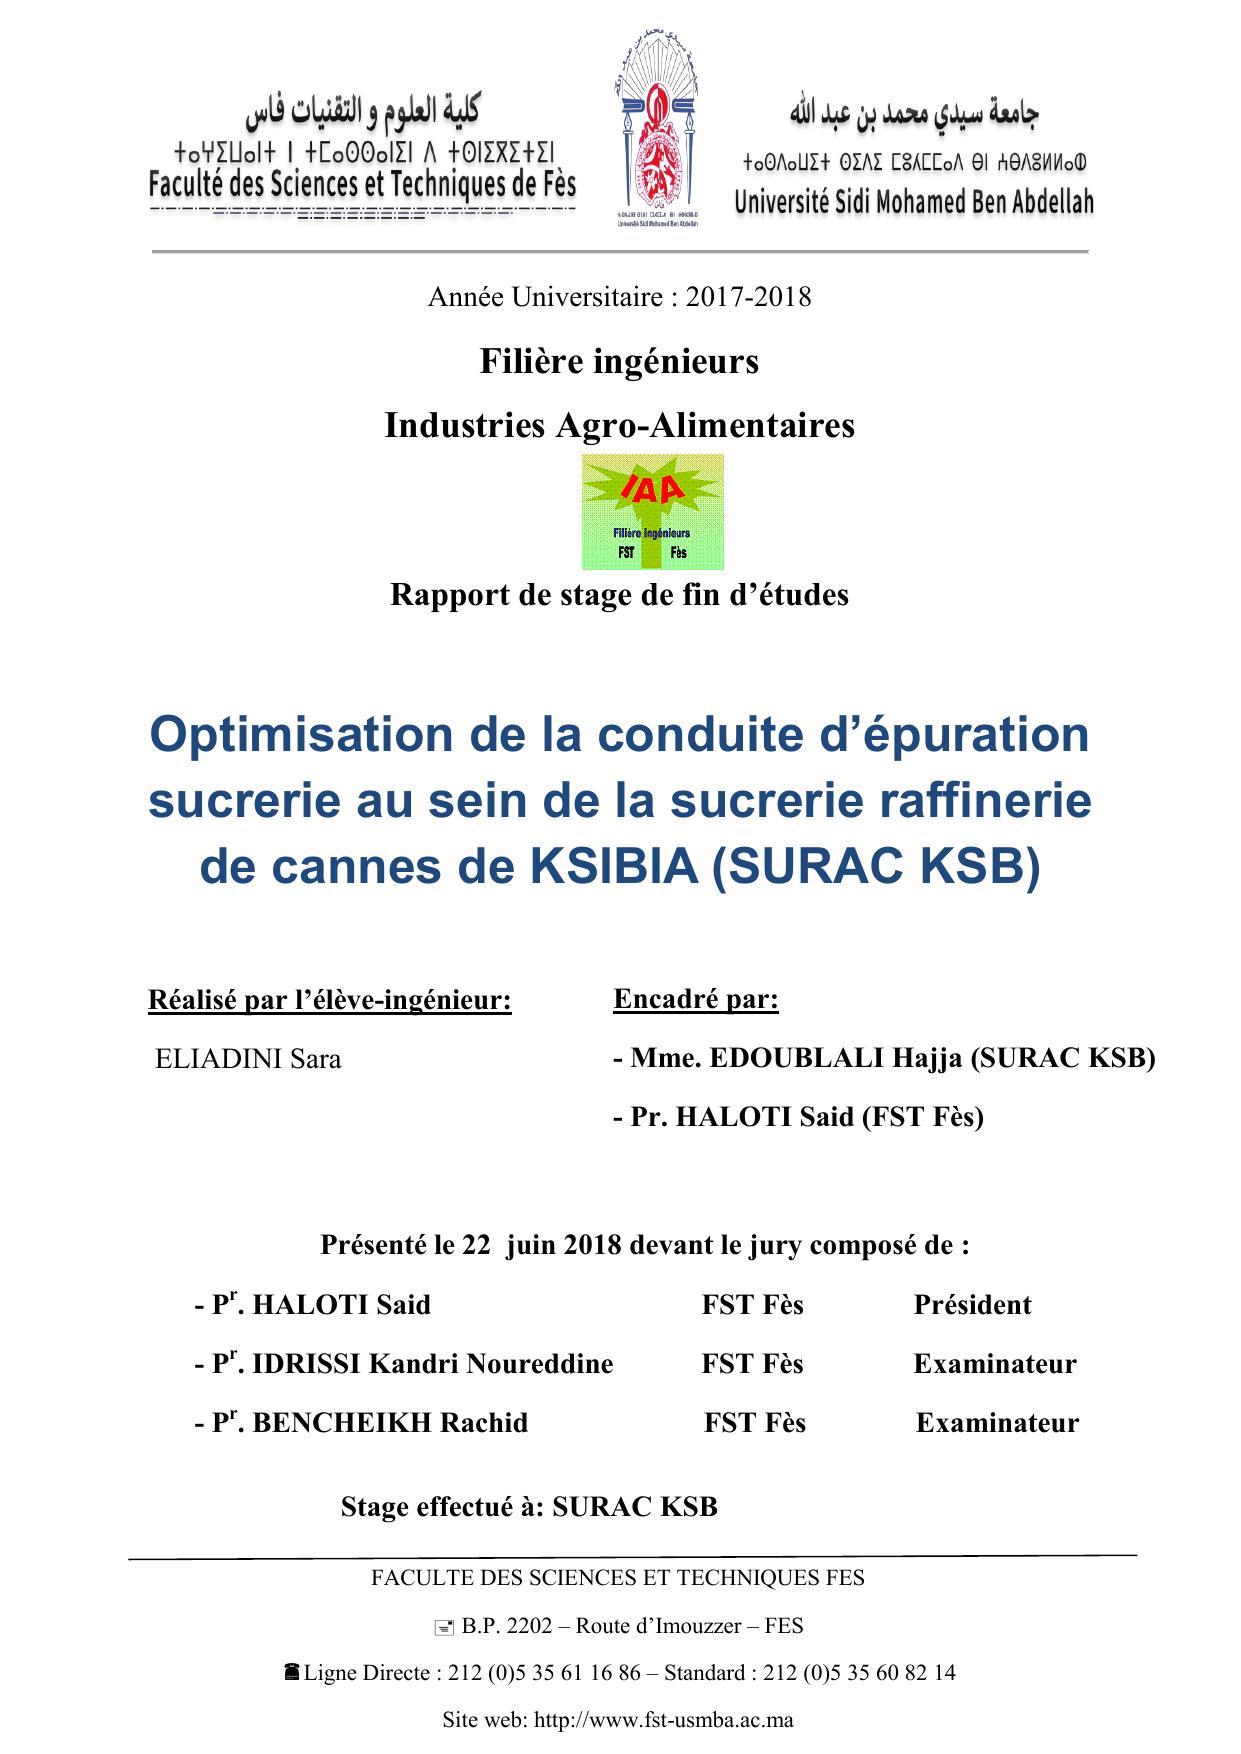 Optimisation de la conduite d’épuration sucrerie au sein de la sucrerie raffinerie de cannes de KSIBIA (SURAC KSB)